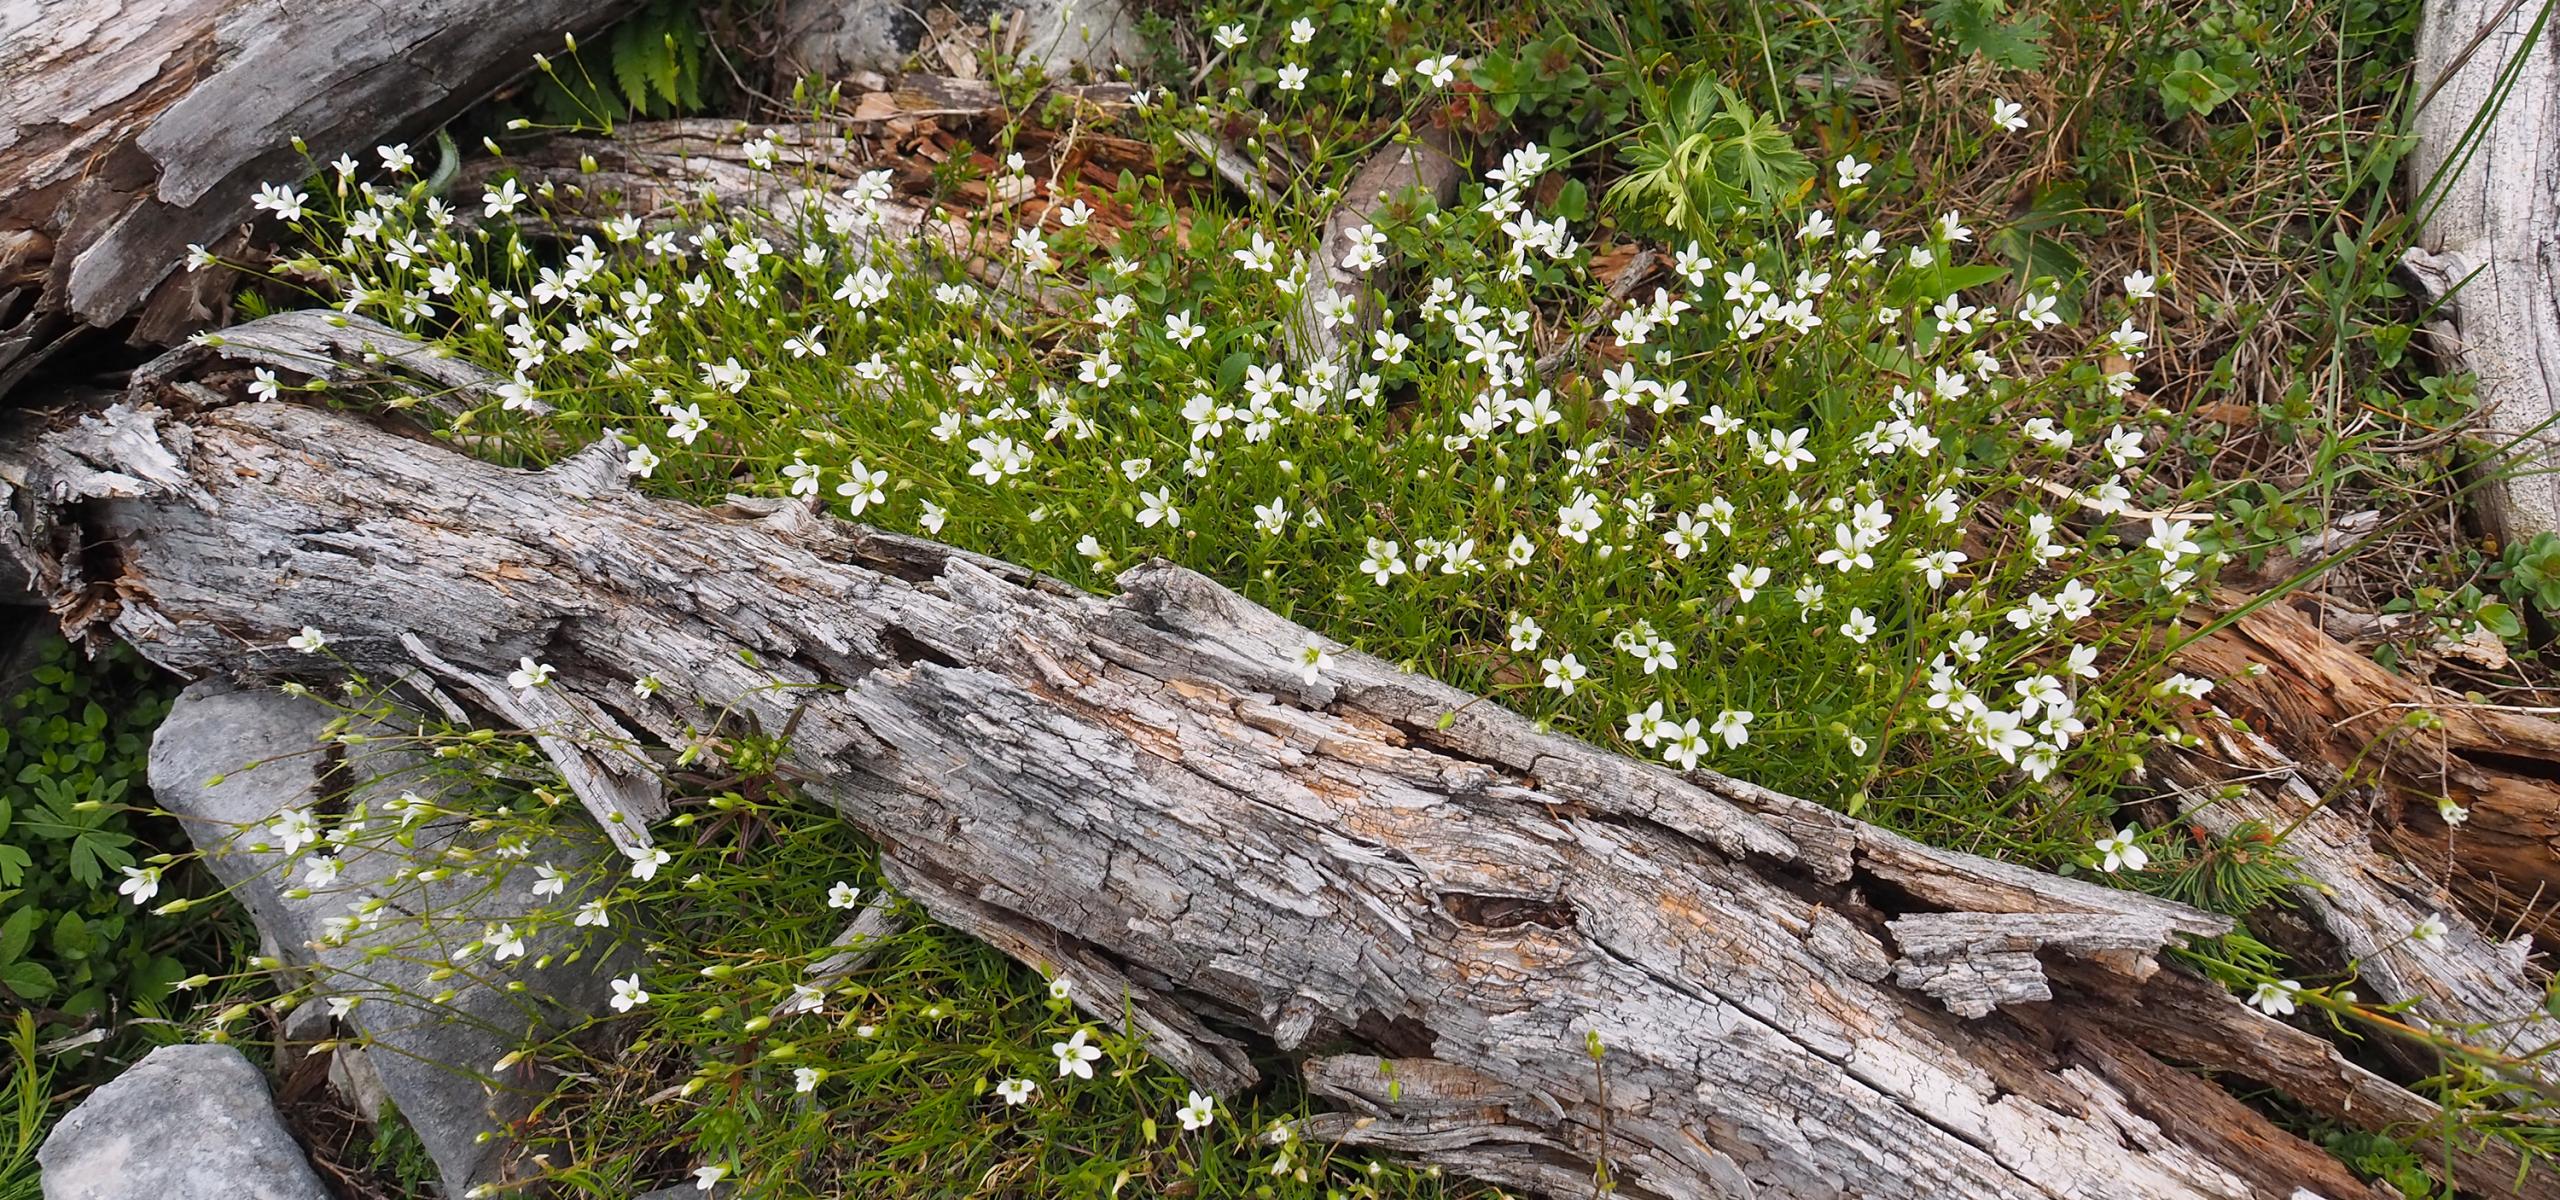 Unter liegendem Totholz sprießen junge Alpenpflanzen